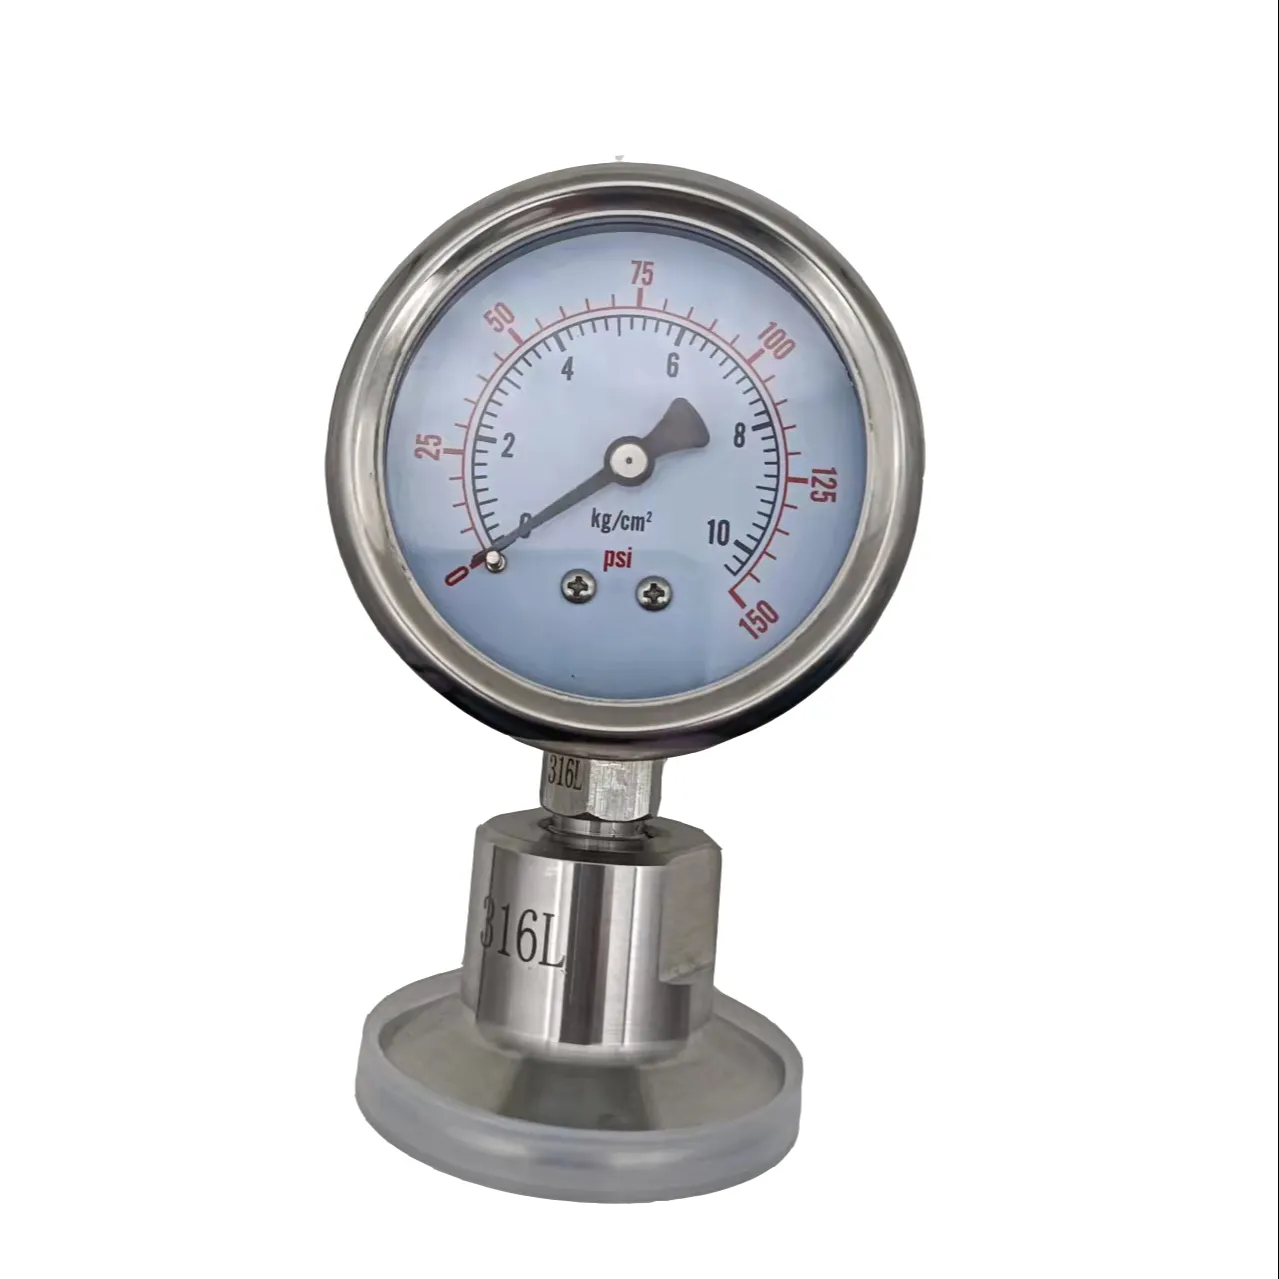 Ss304 manômetro de aço inoxidável enchido, medidor de pressão com três braçadeiras